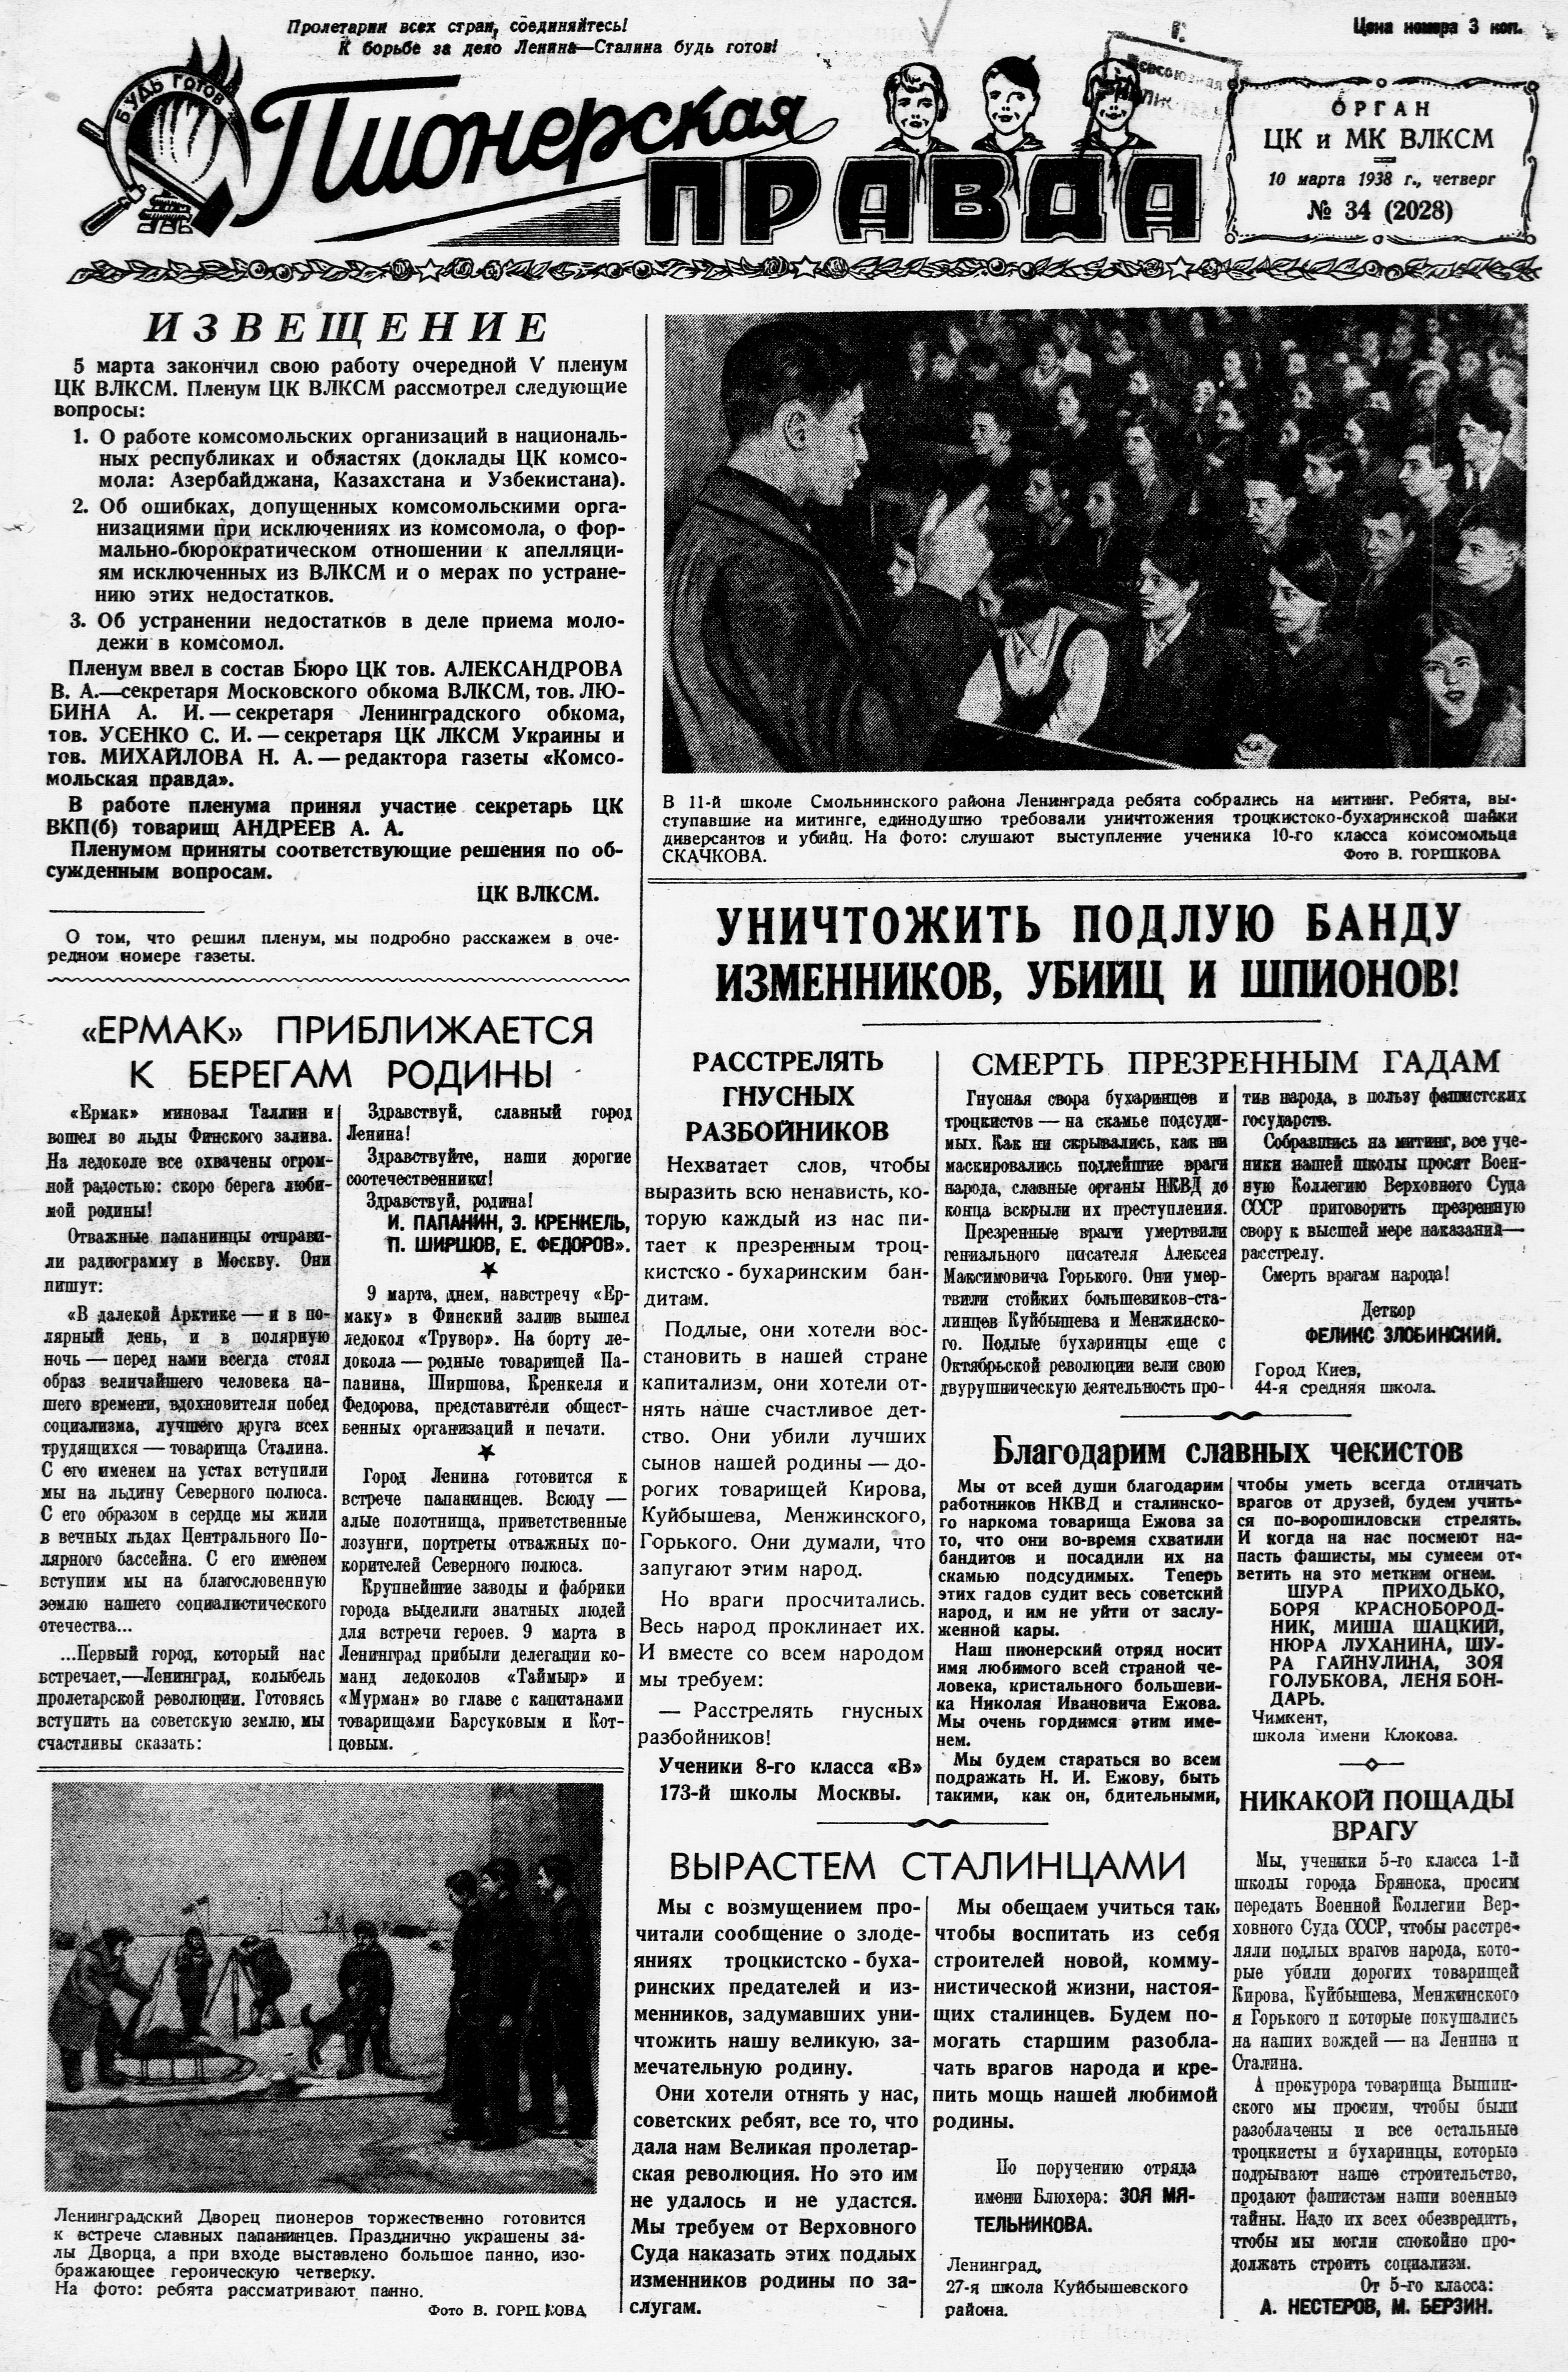 Пионерская правда. 1938. № 034 (2028): Орган ЦК и МК ВЛКСМ - 1938